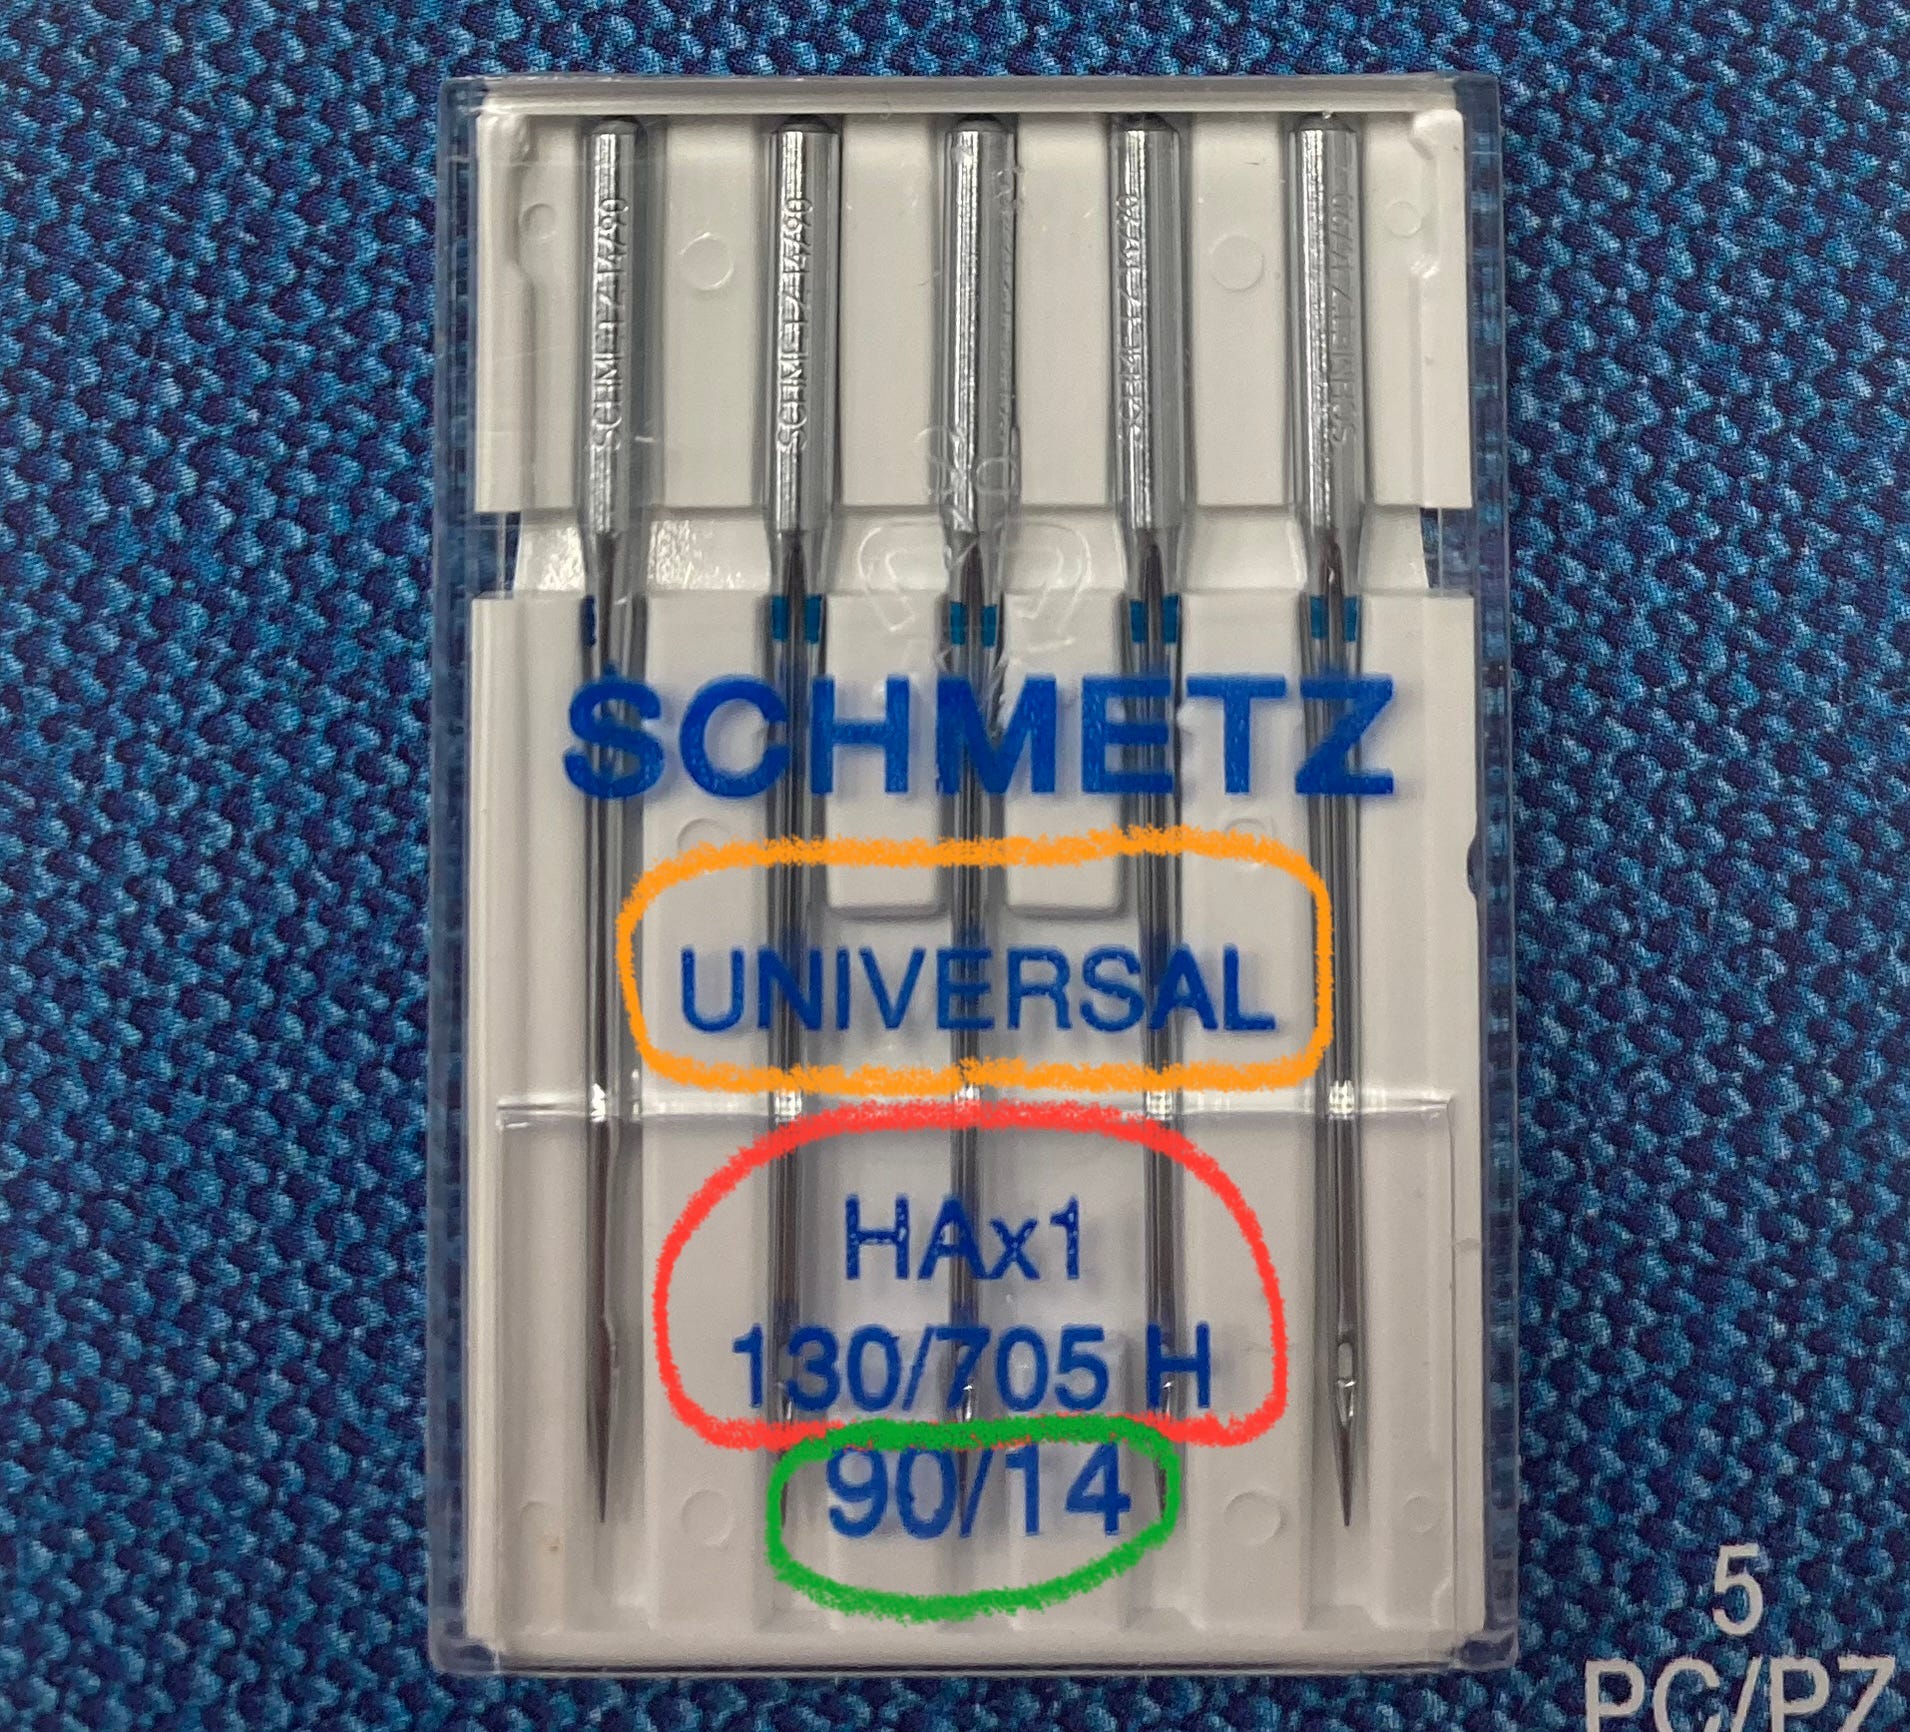 Schmetz Ball Point Machine Needles, Size 12/80 - 5 pack